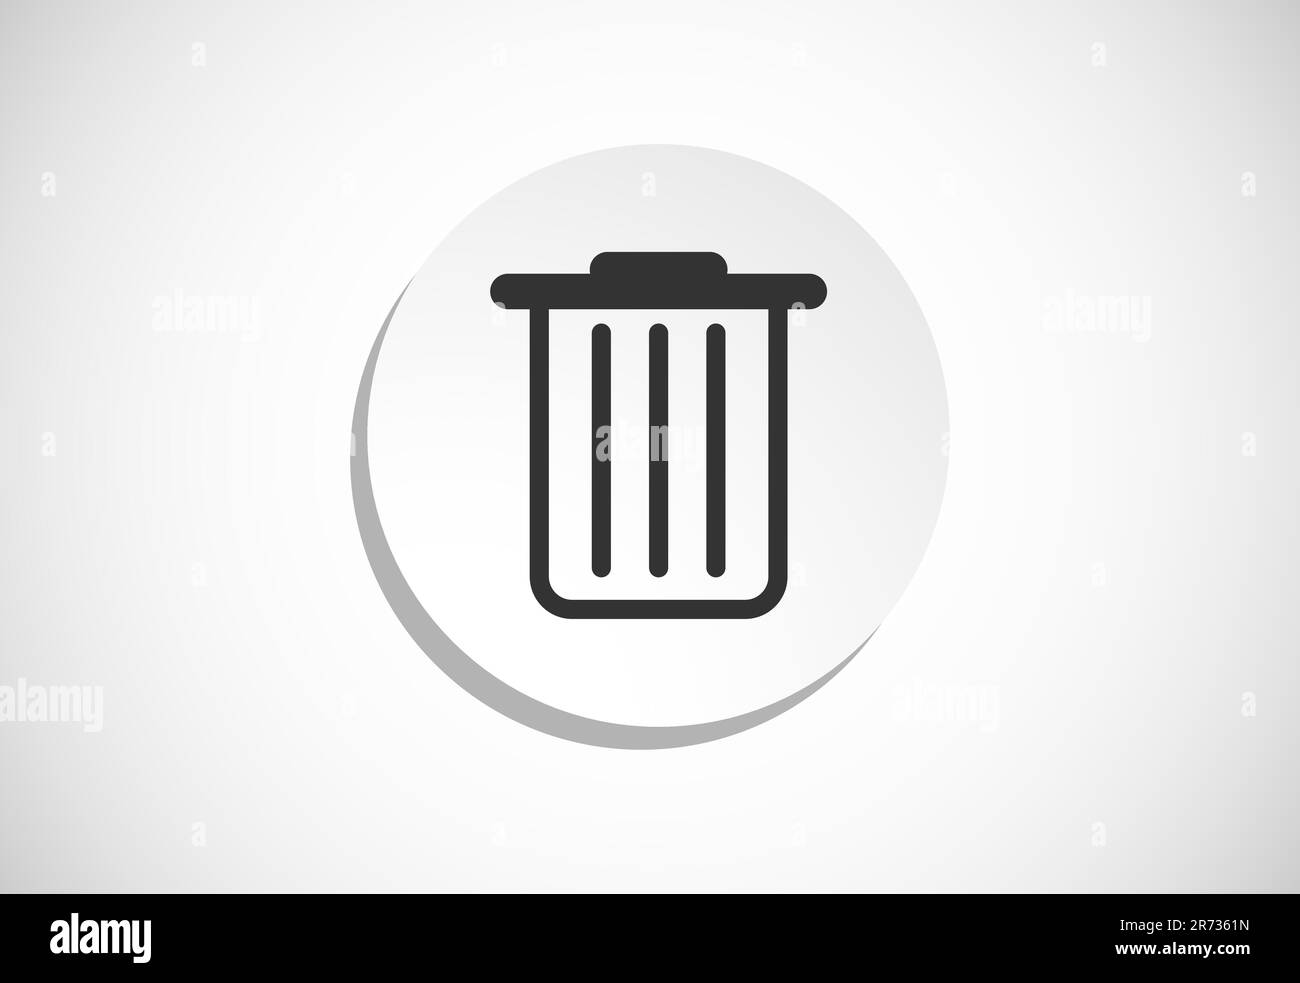 Delete button trash can, bin symbol. Delete web icon vector illustration Stock Vector